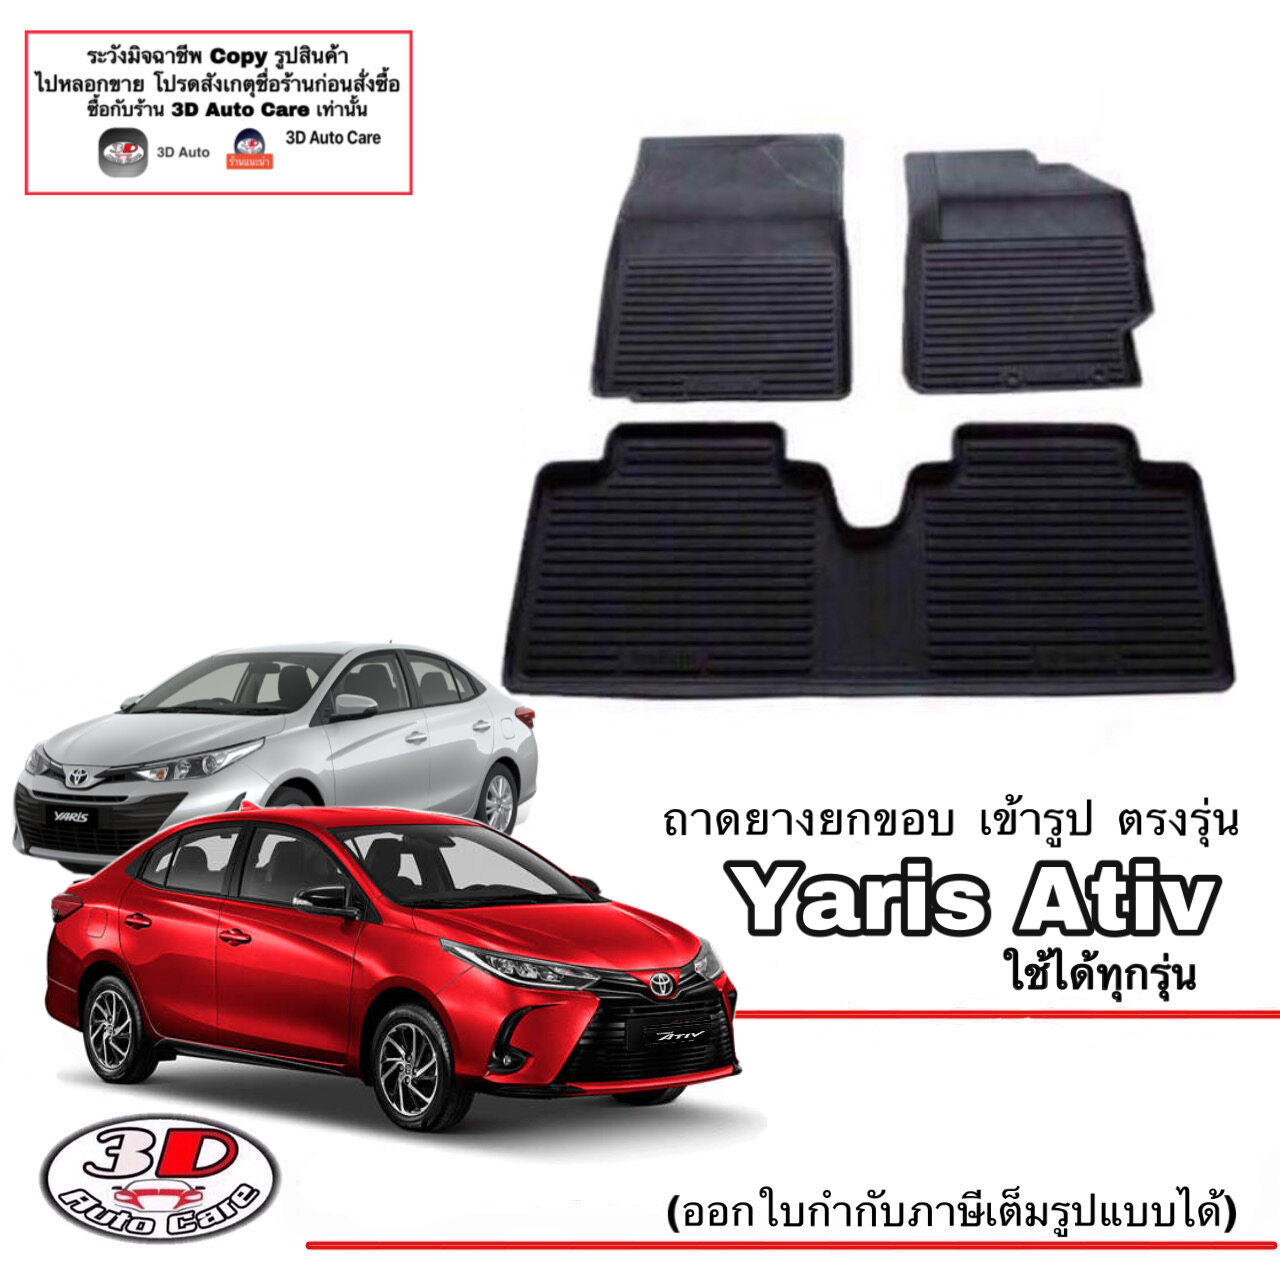 ผ้ายางปูพื้นรถ ถาดรองท้ายรถ ยกขอบ เข้ารูป ตรงรุ่น Toyota Yaris Ativ 2015-2022 (แยกราคาตามตัวเลือกสินค้า) (ส่งเคอรี่ 1-2วันถึง) พรมยางปูพื้น